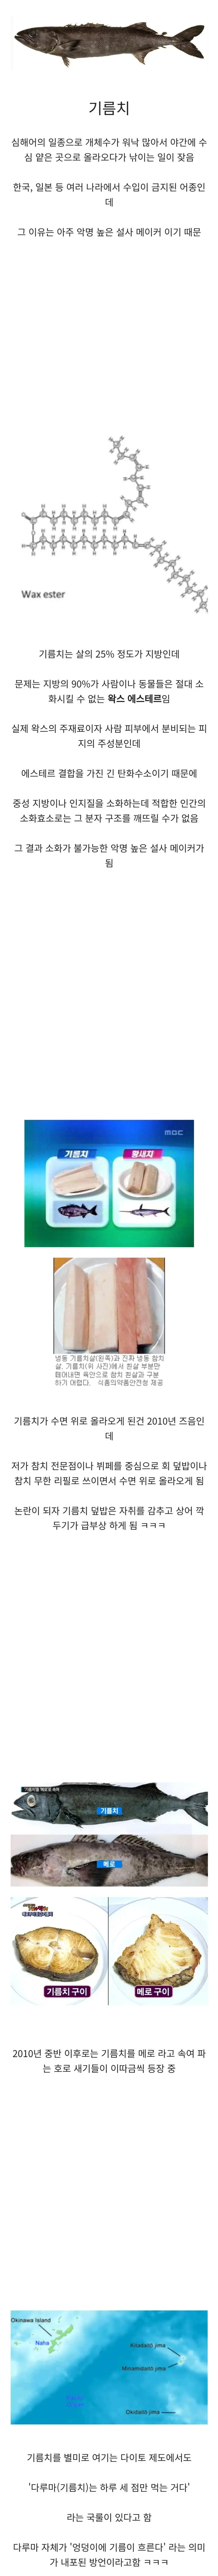 먹으면 설사하는 생선.jpg | mbong.kr 엠봉